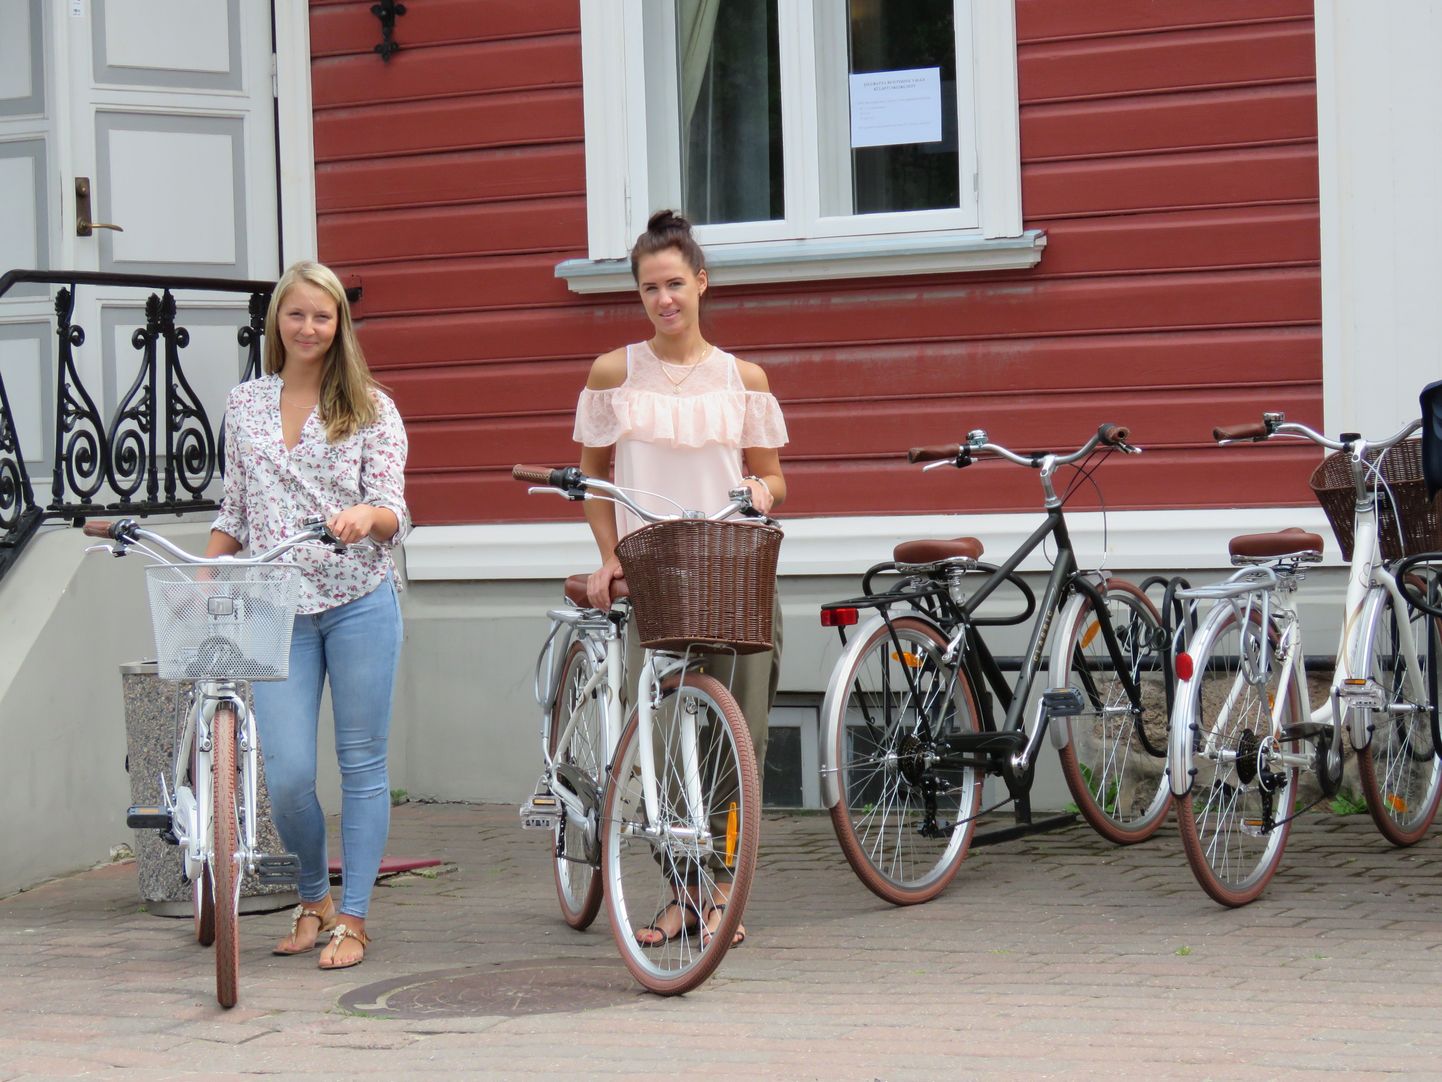 Turismiinfopunkti konsultandid Heleri Härk (vasakul) ja Alice Konsberg on uued rattad juba ära proovinud ja kiidavad need väga mugavateks ning praktilisteks sõiduvahenditeks.